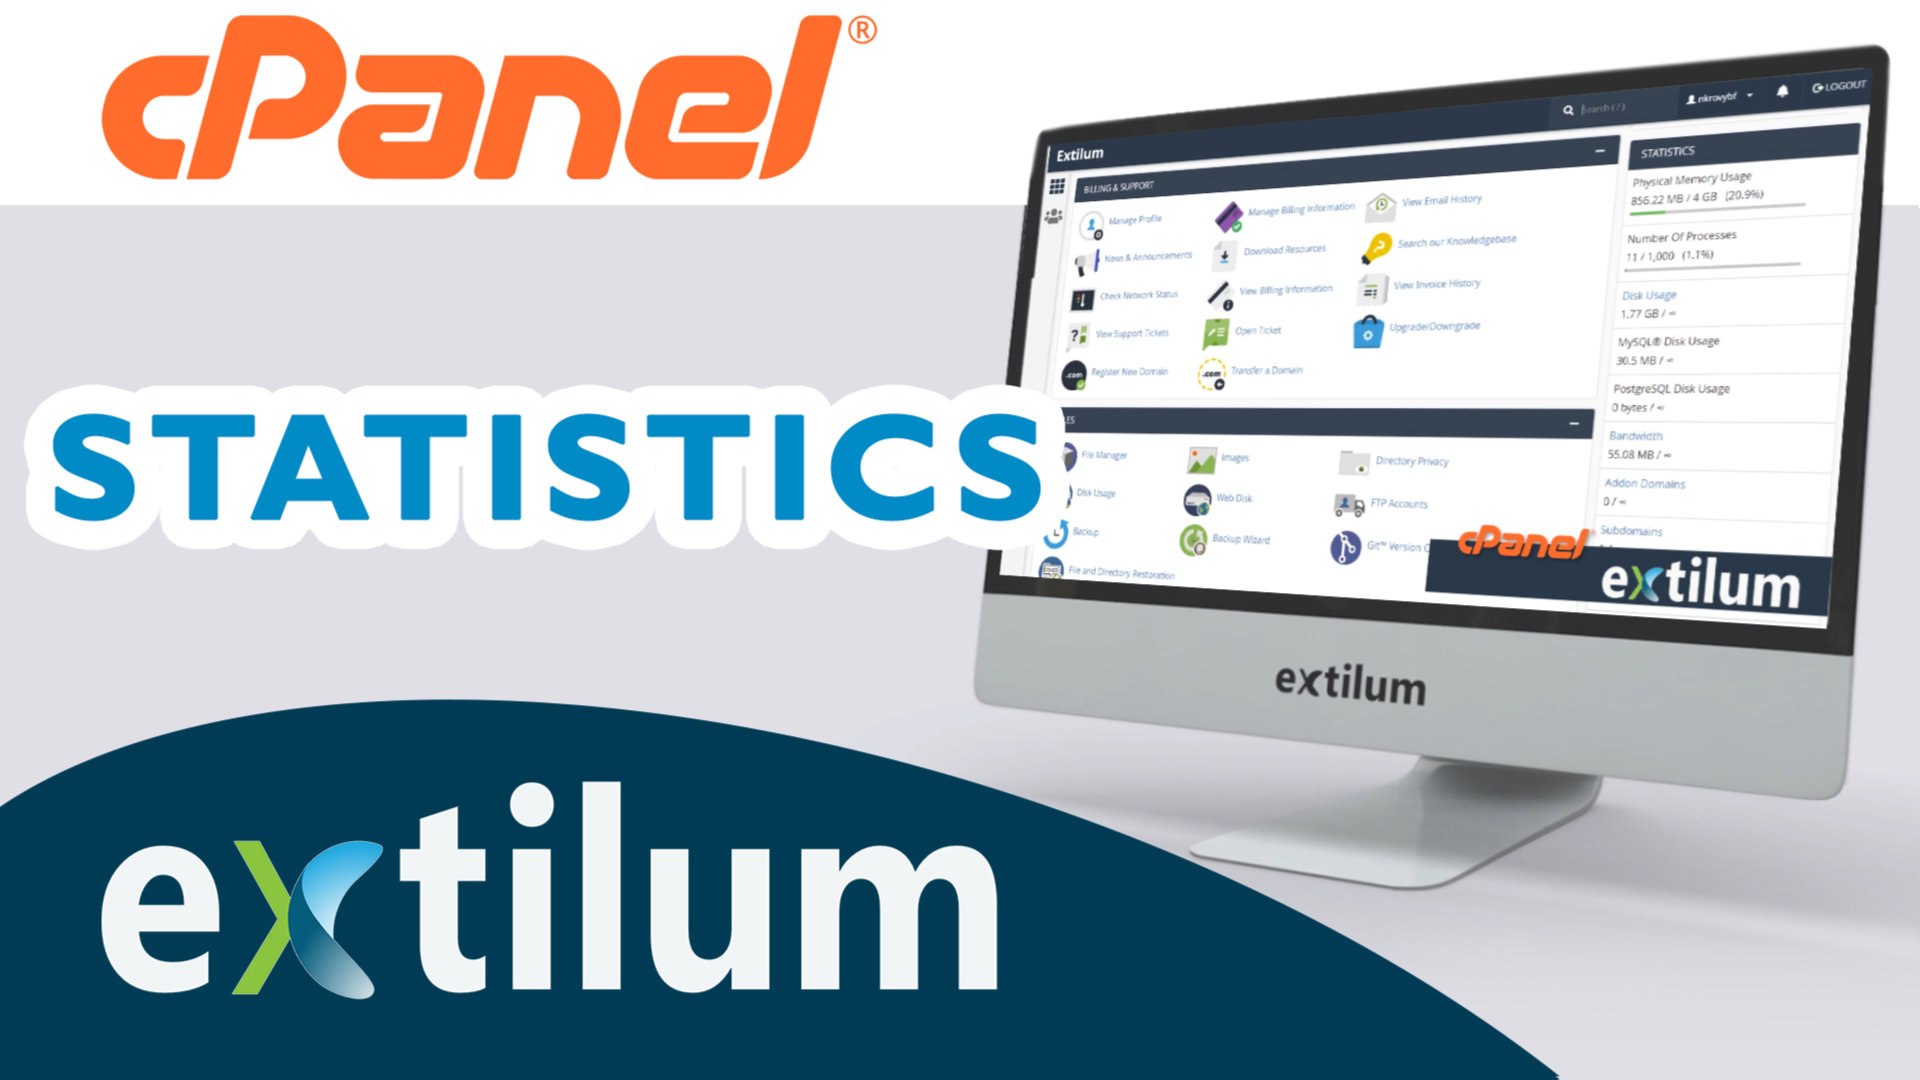 Extilum cpanel - statistics